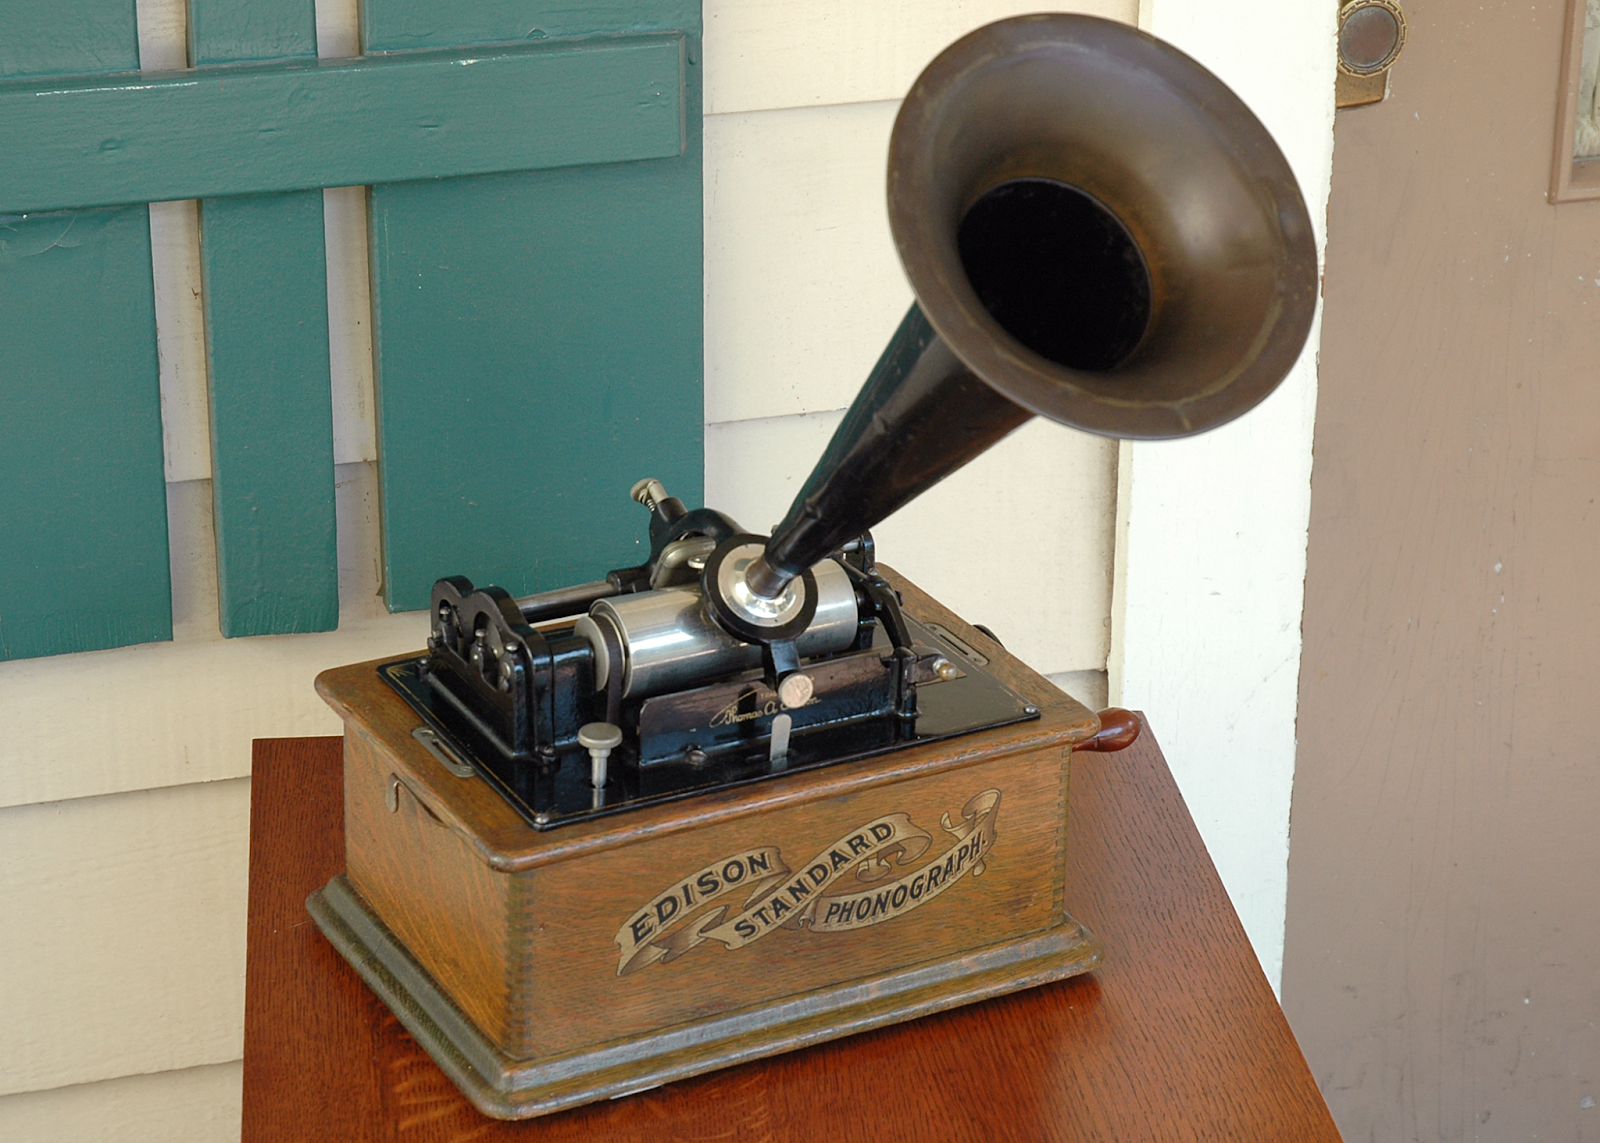 Фонограф первая запись. Edison Standard Phonograph. Фонограф Томаса Эдисона. Thomas Alva Edison Phonograph. 1878 Эдисон продемонстрировал Фонограф.